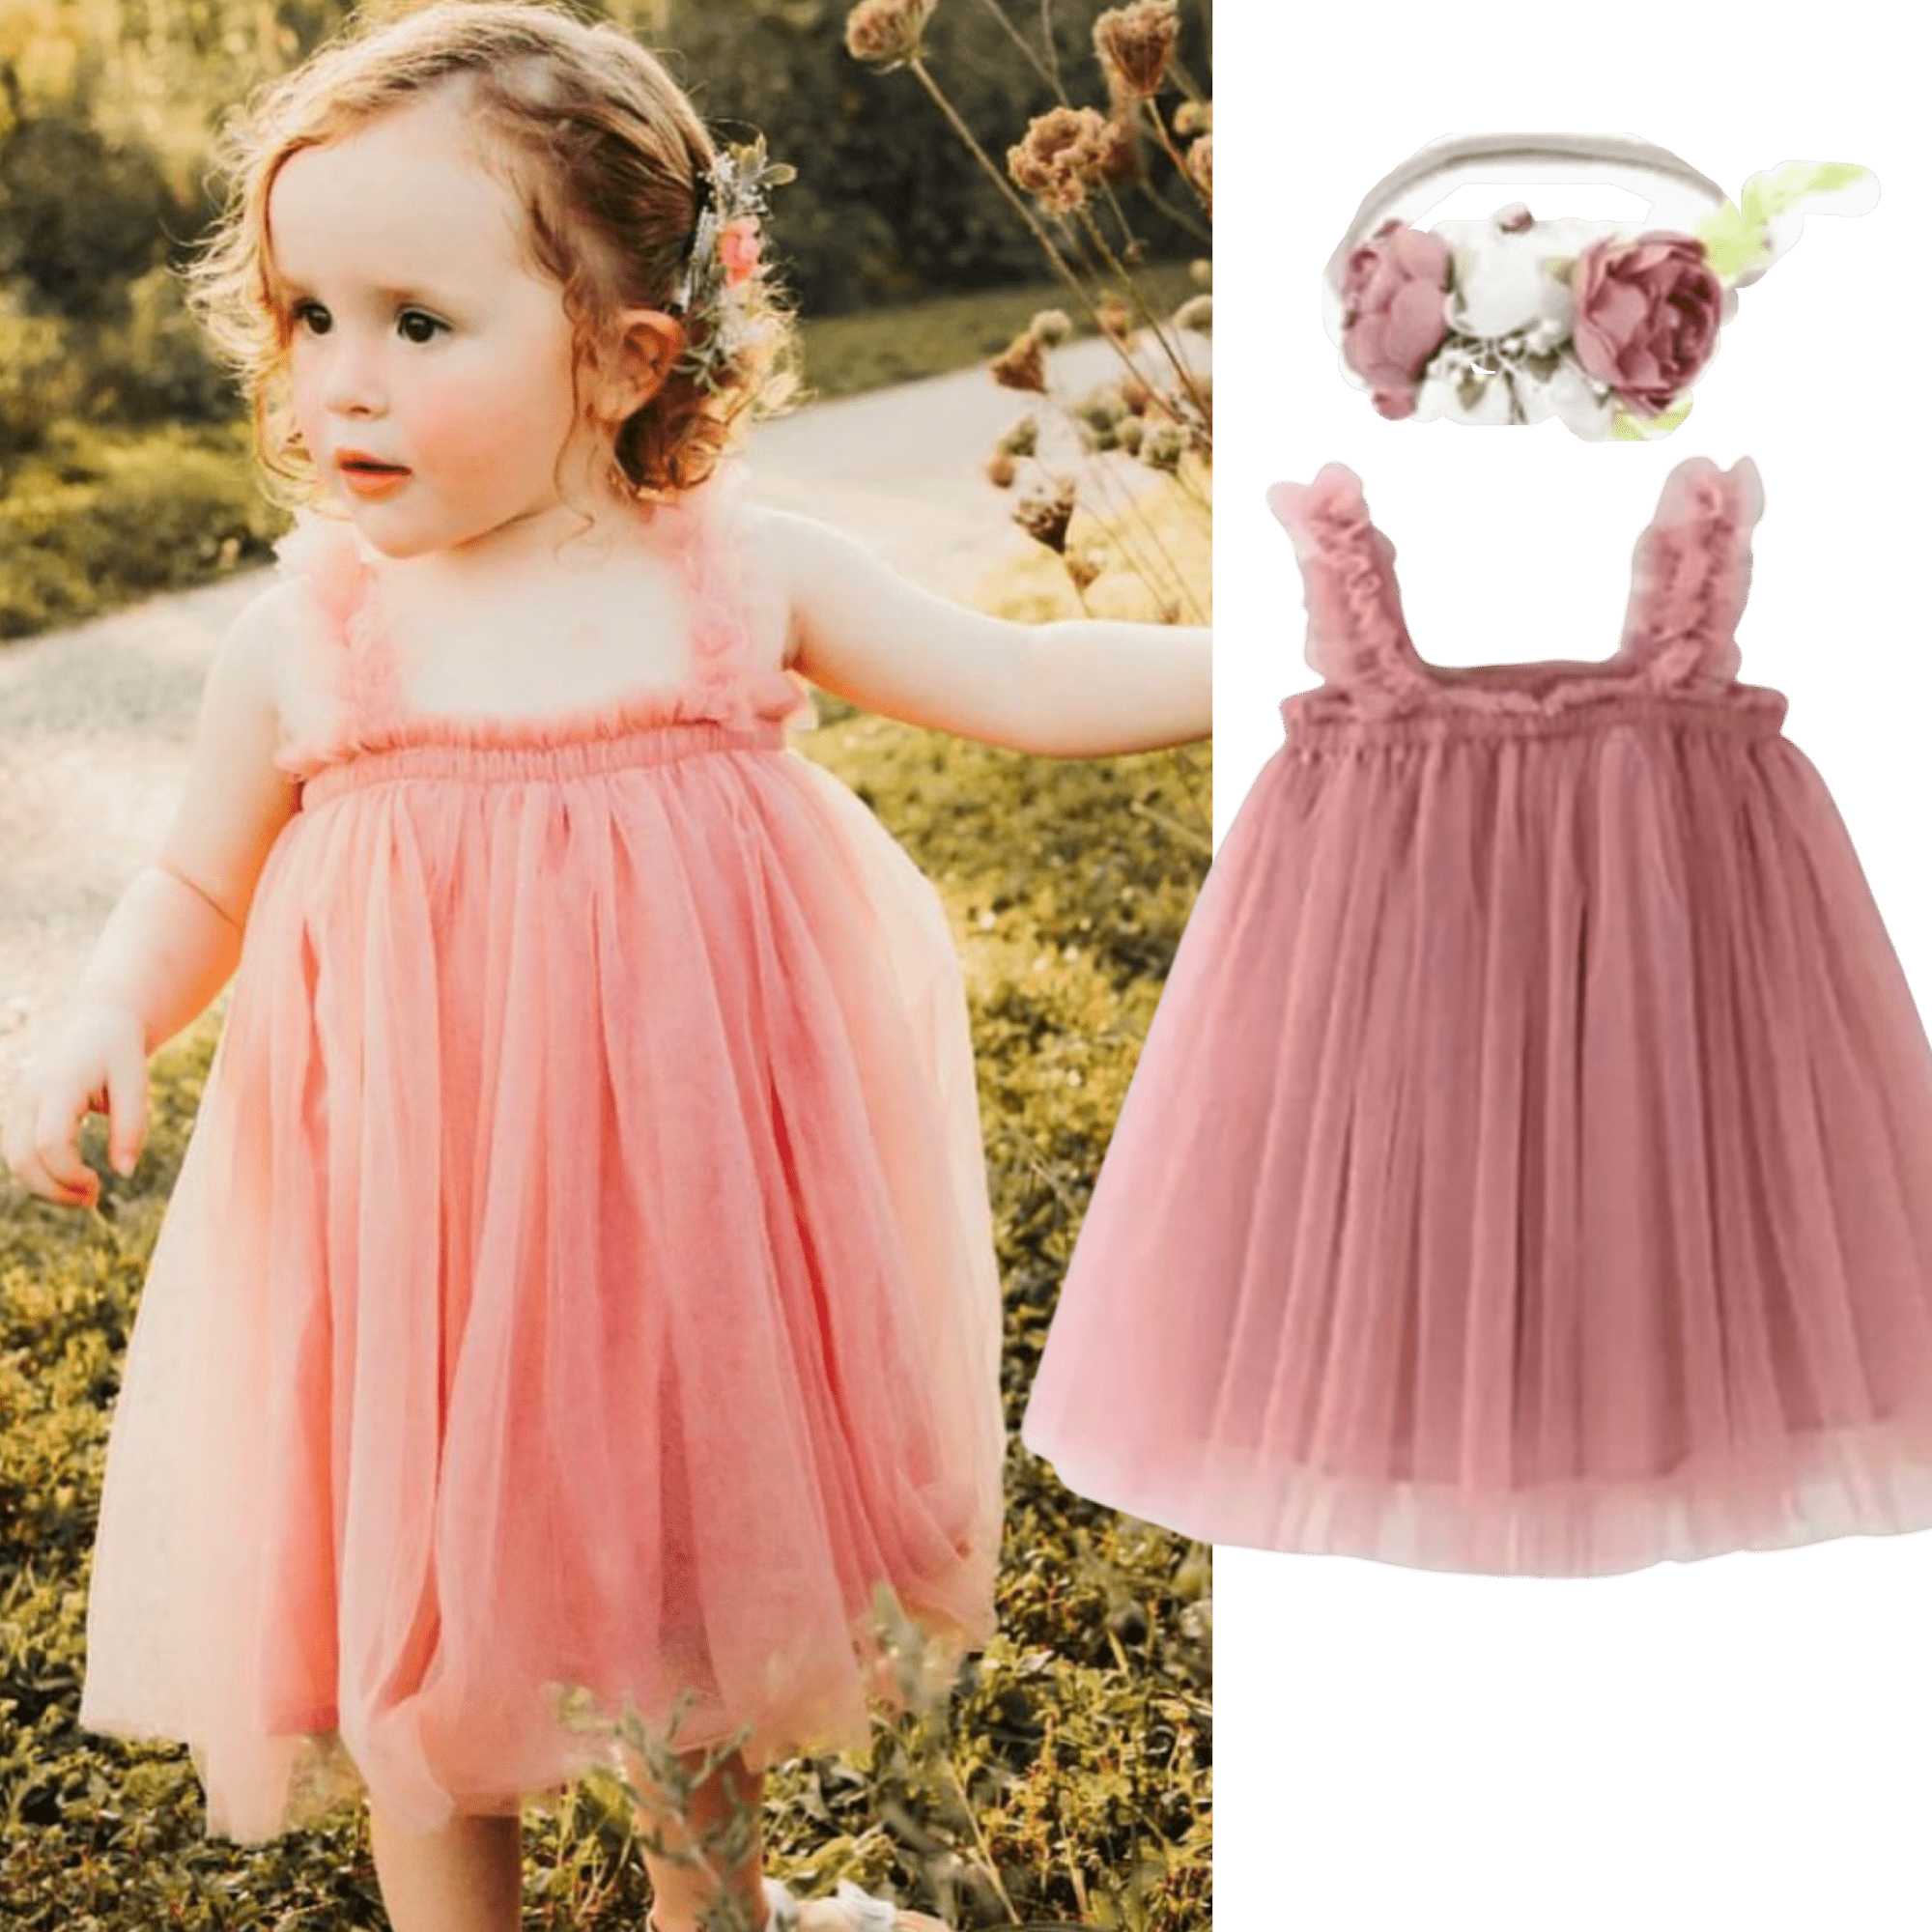 Skyler - Tulle Dress Toddler Tutu Flower girl dress.